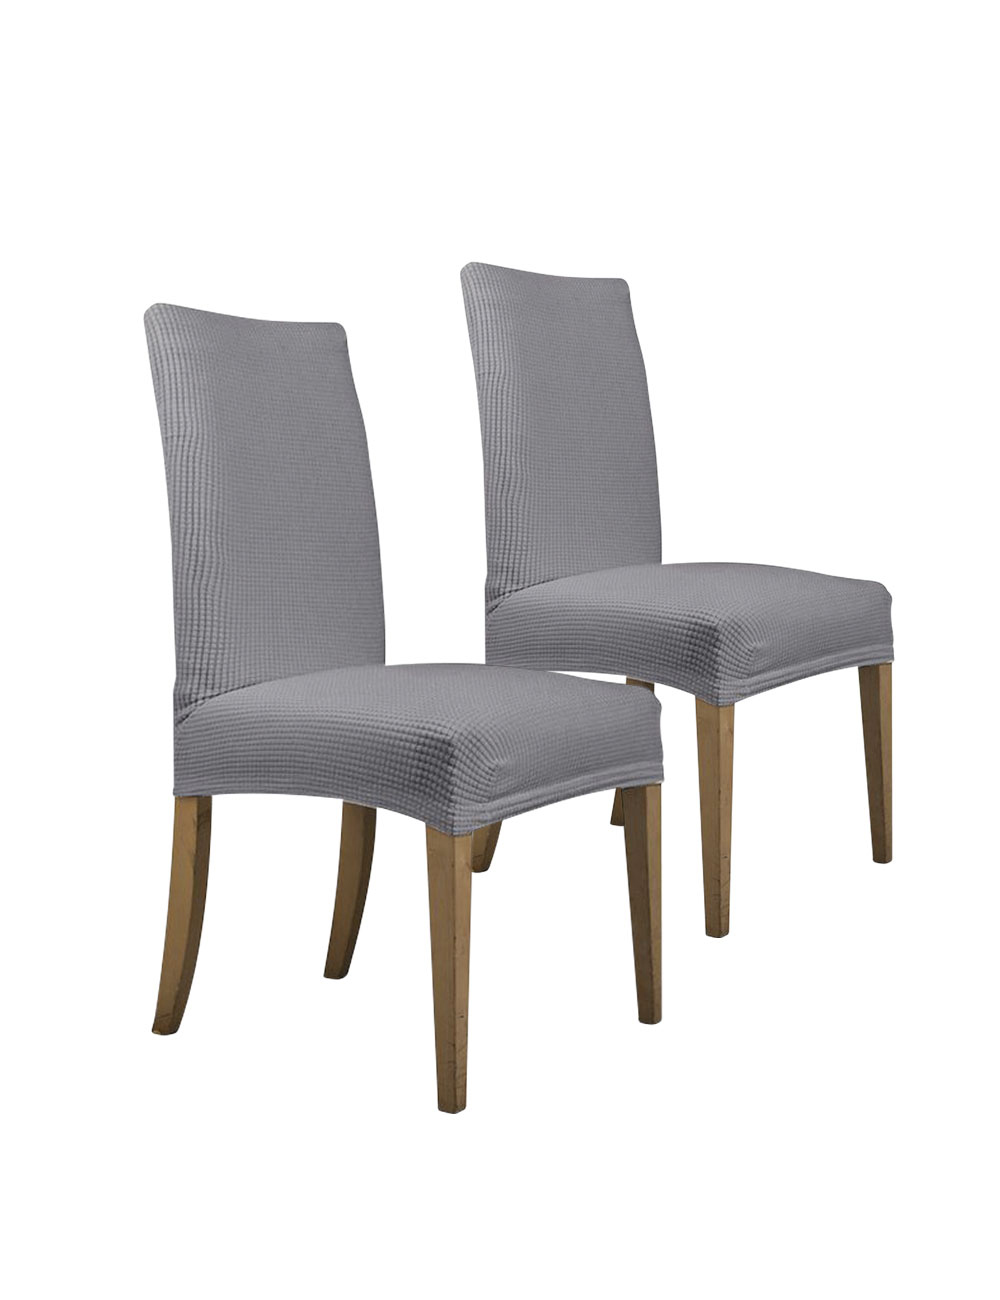 Housse pour chaise standard «Soft», gris, set de 2 pièces, dos La 38